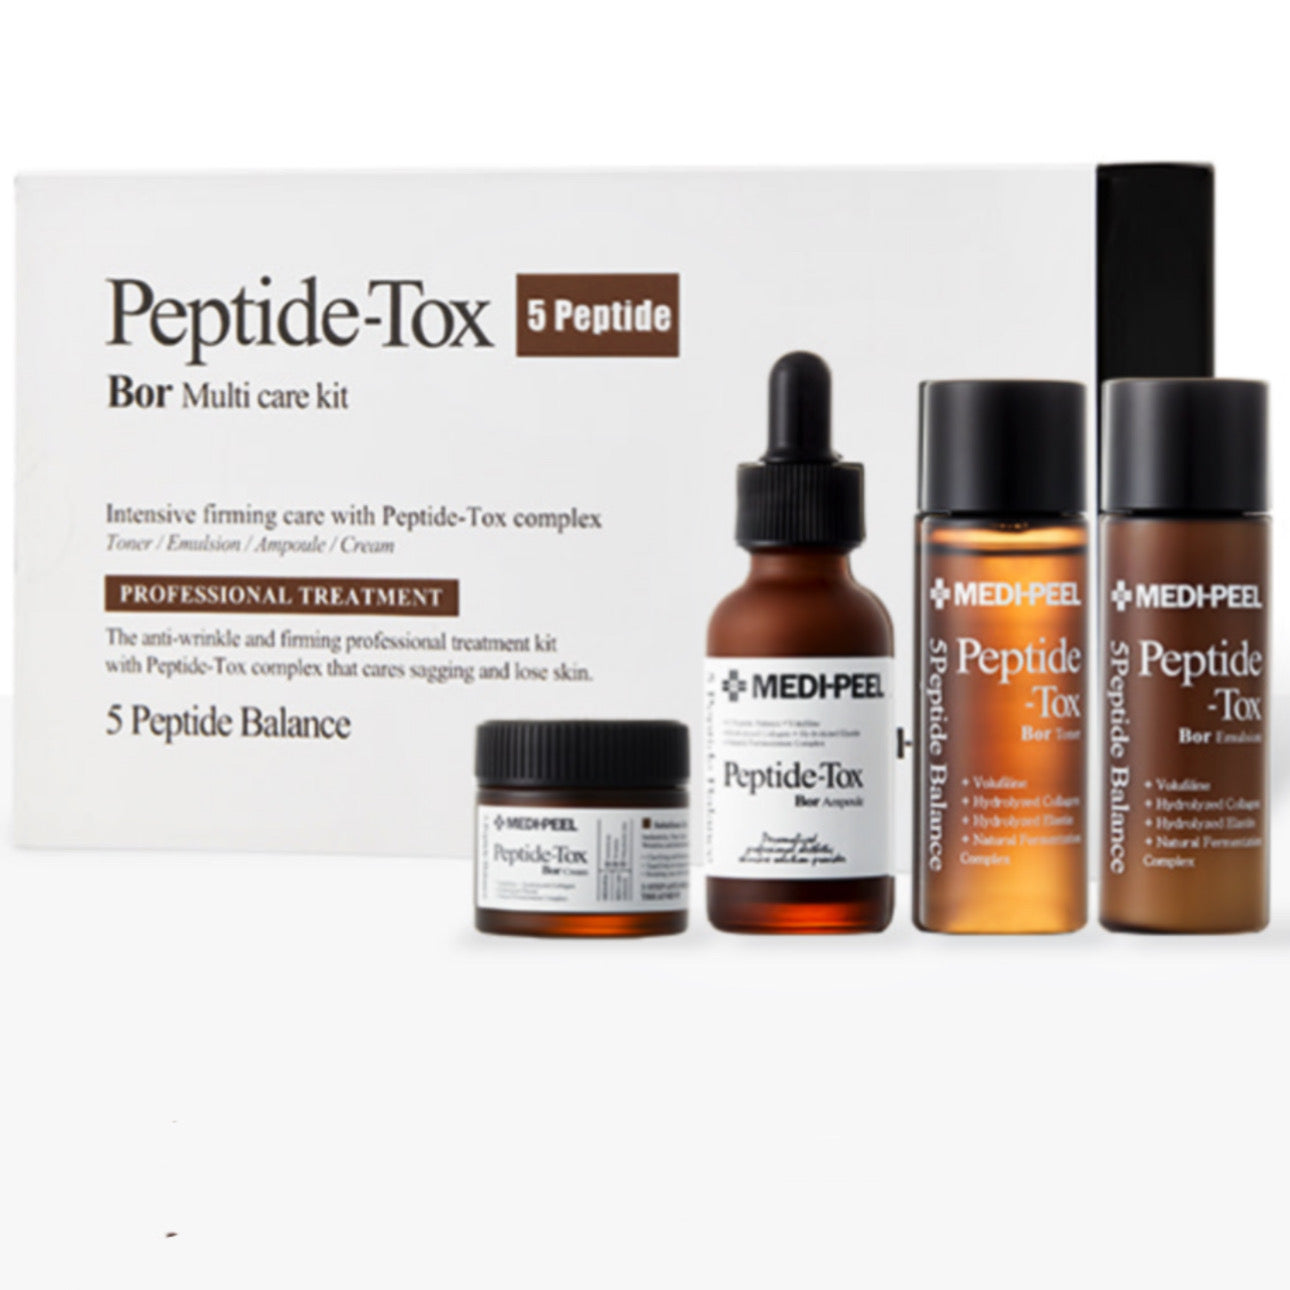 Pepti-tox Bor Anti-aging set by Medi-peel